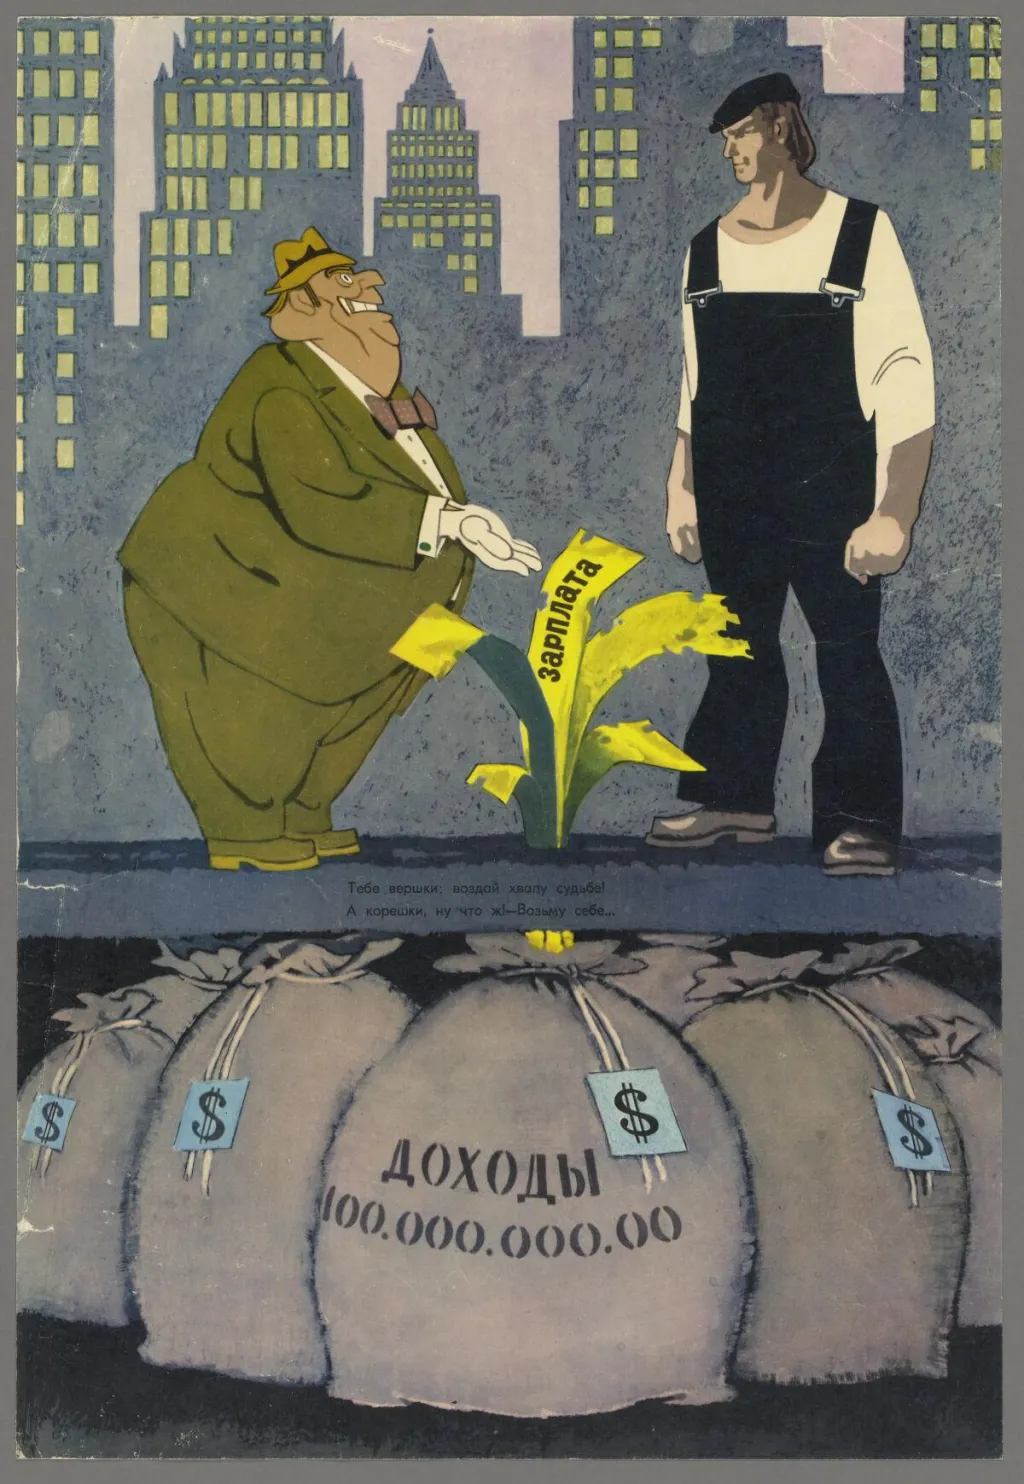 Tento plakát upozorňující na zisky kapitalistických dělníků ve srovnání s kapitalisty je součástí série Kapitalismus bez masky z roku 1977